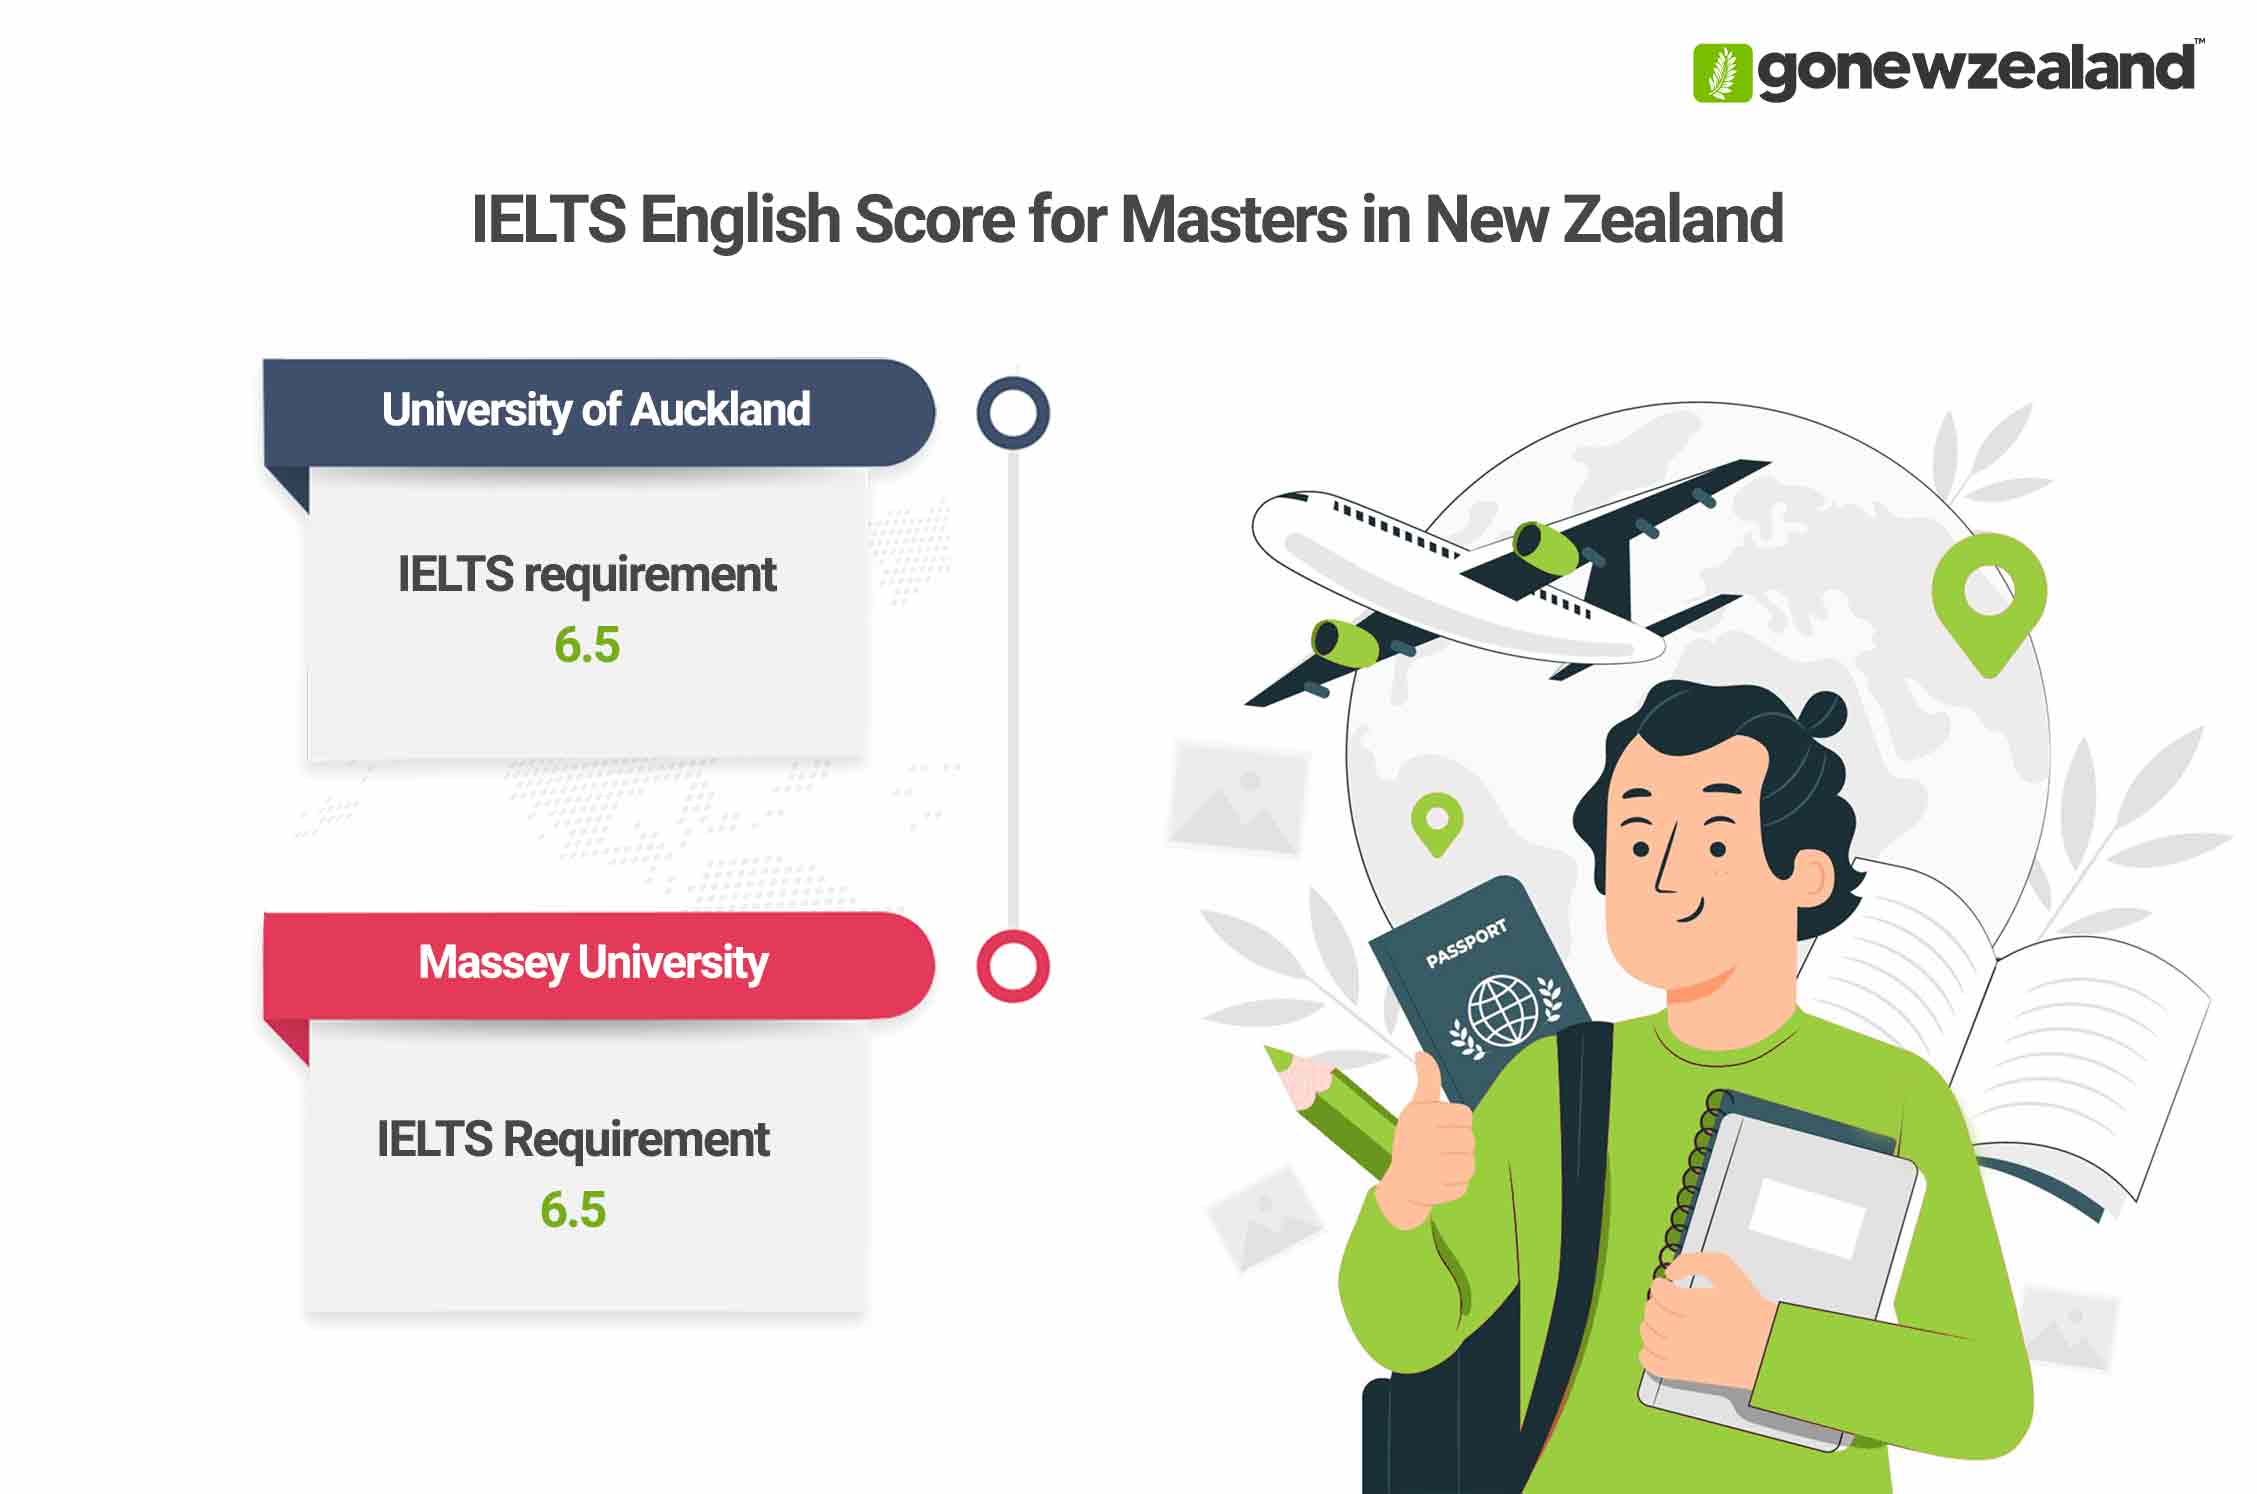 Masters in New Zealand IELTS Score